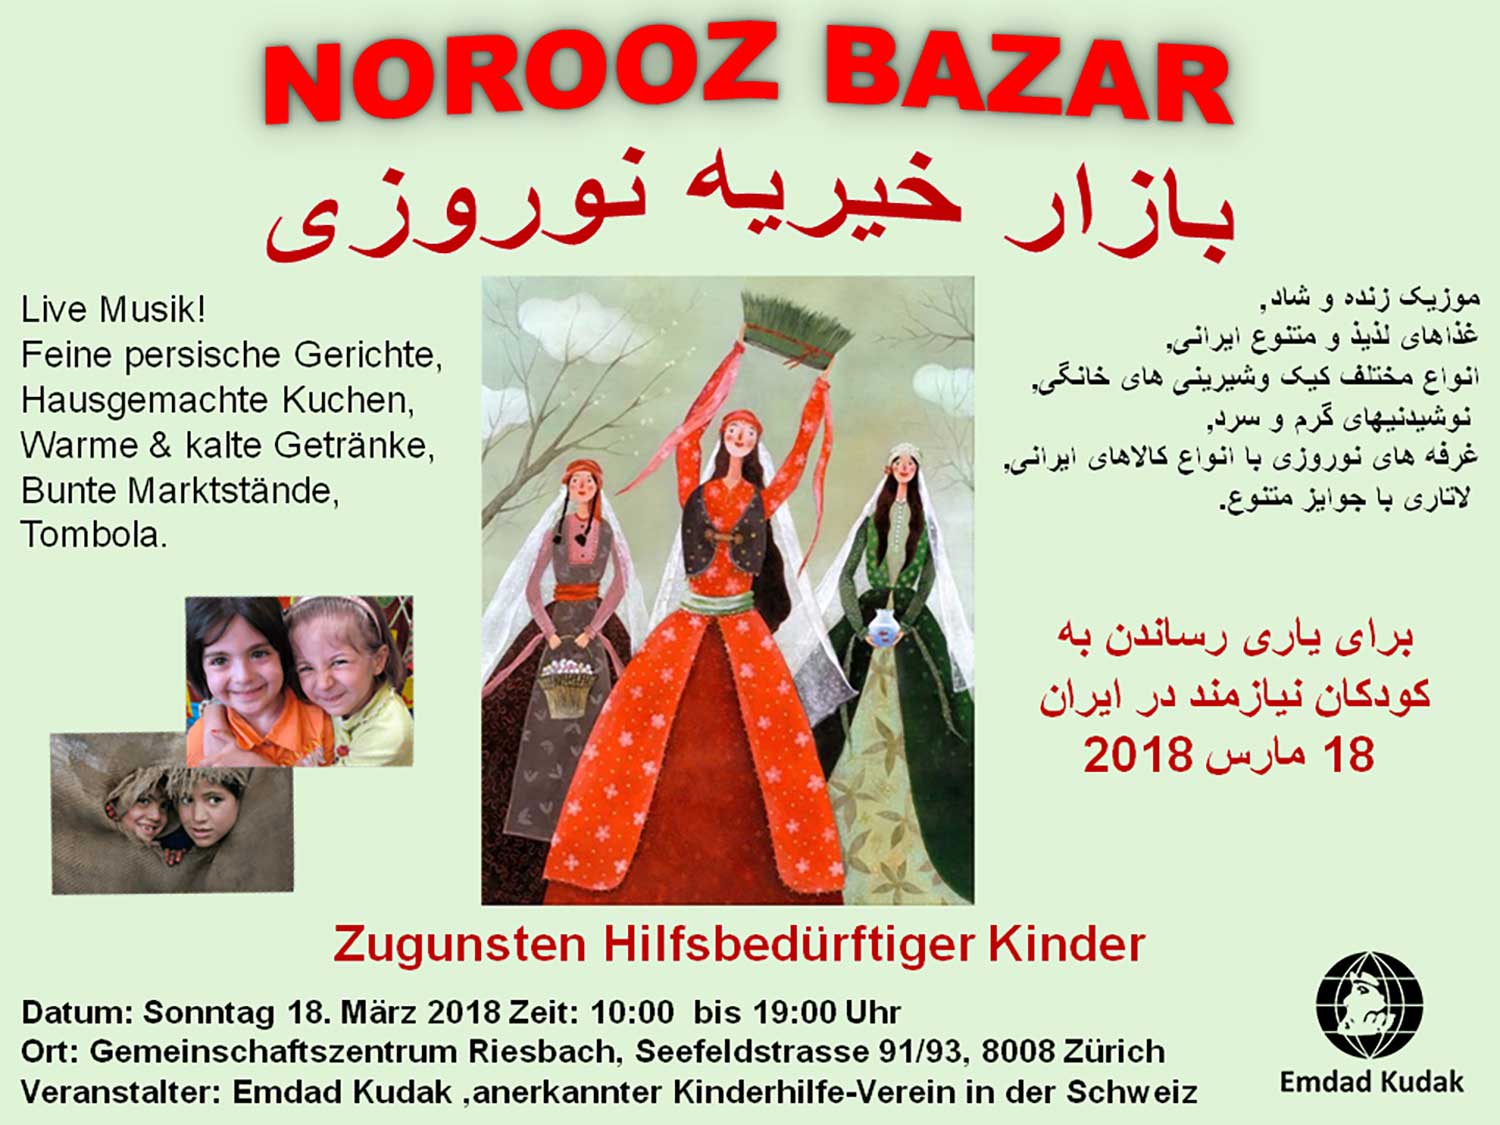 Norooz Bazar 2018